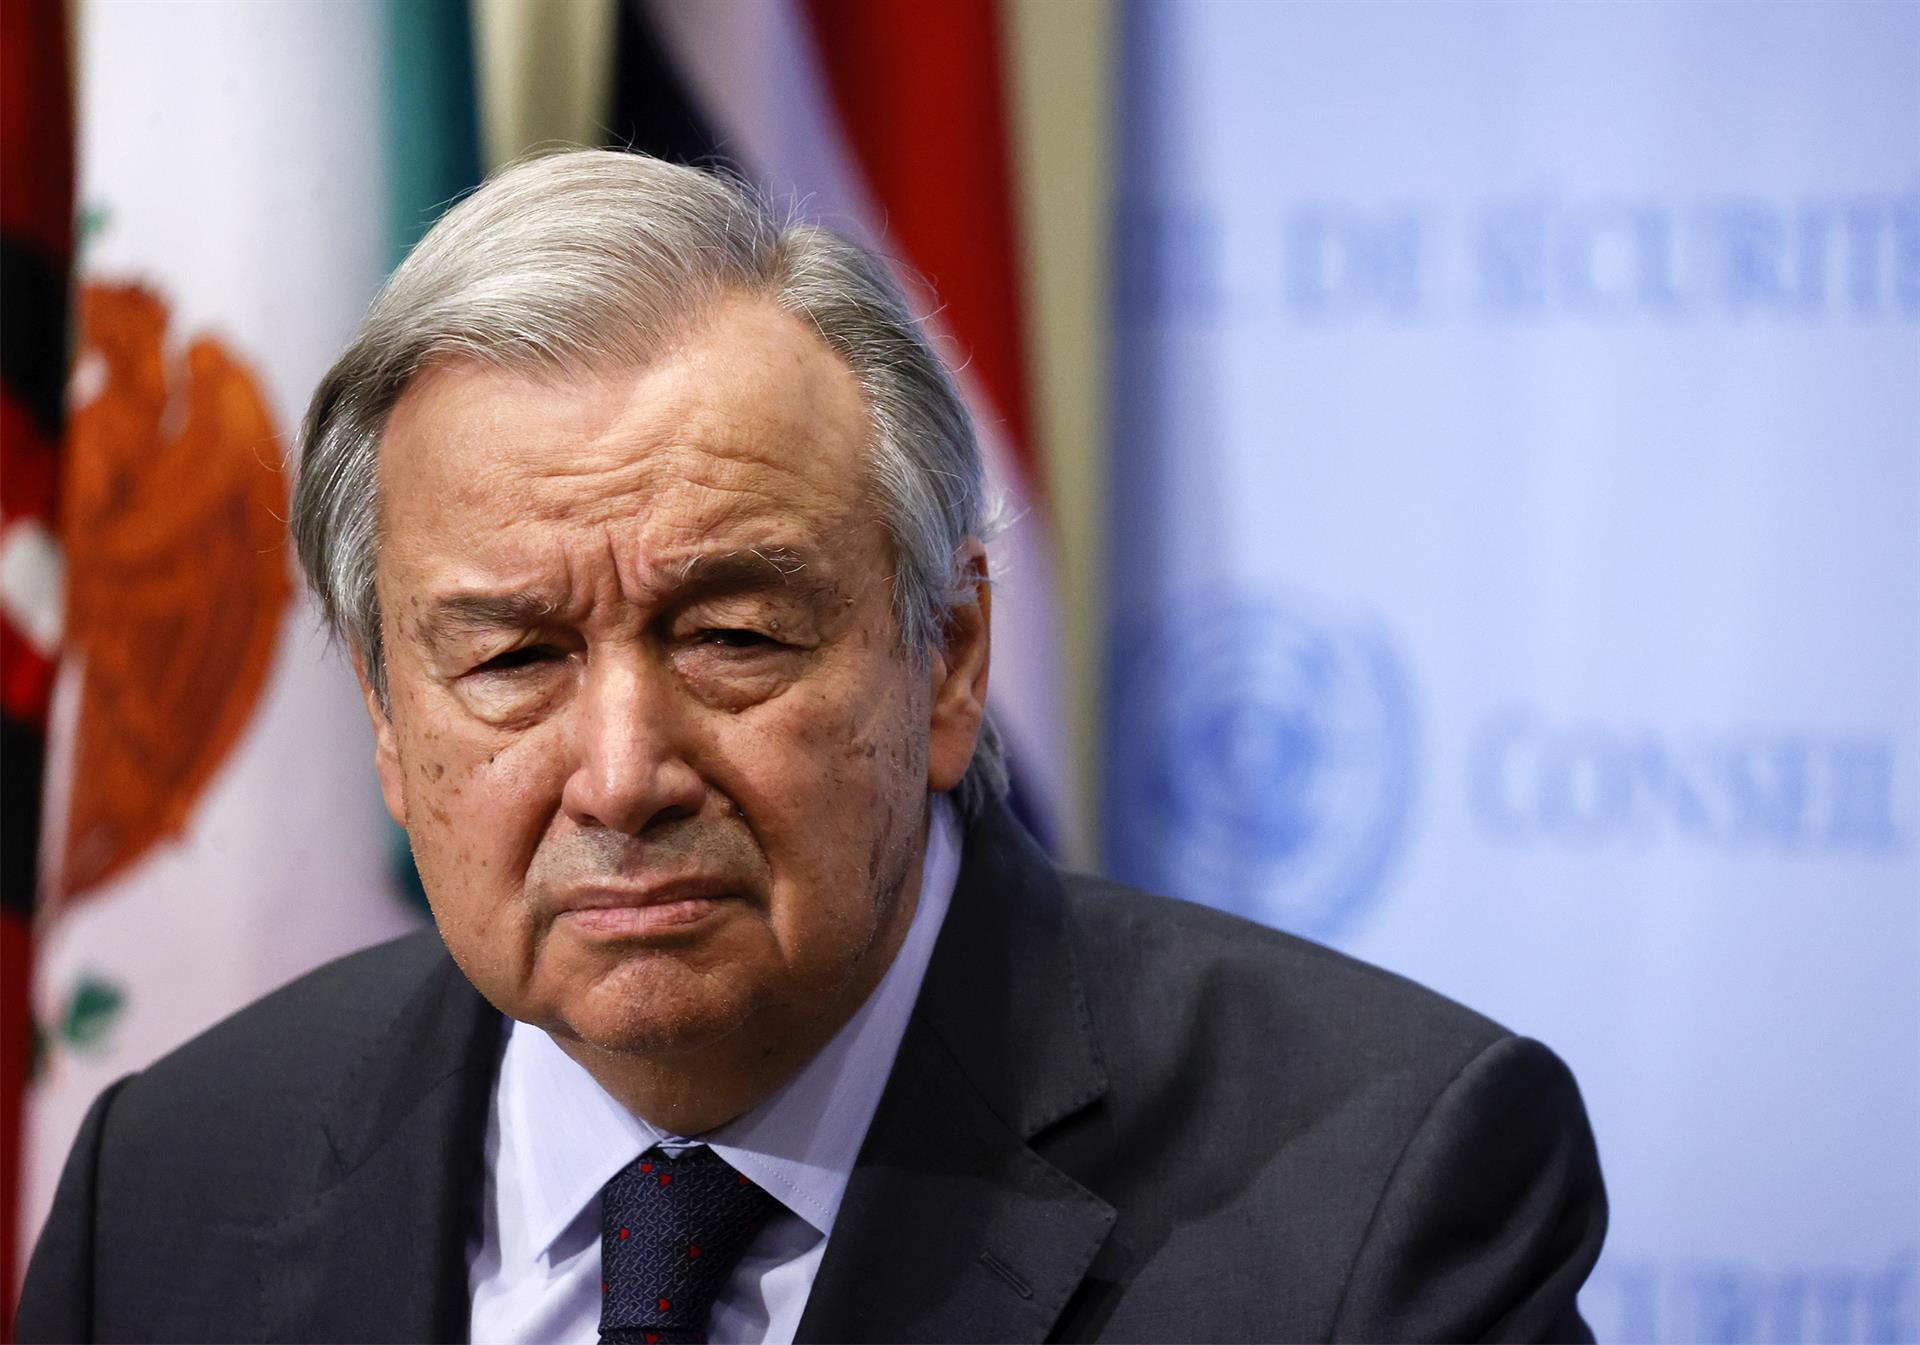 “El colapso climático ha comenzado”, lamenta el jefe de la ONU